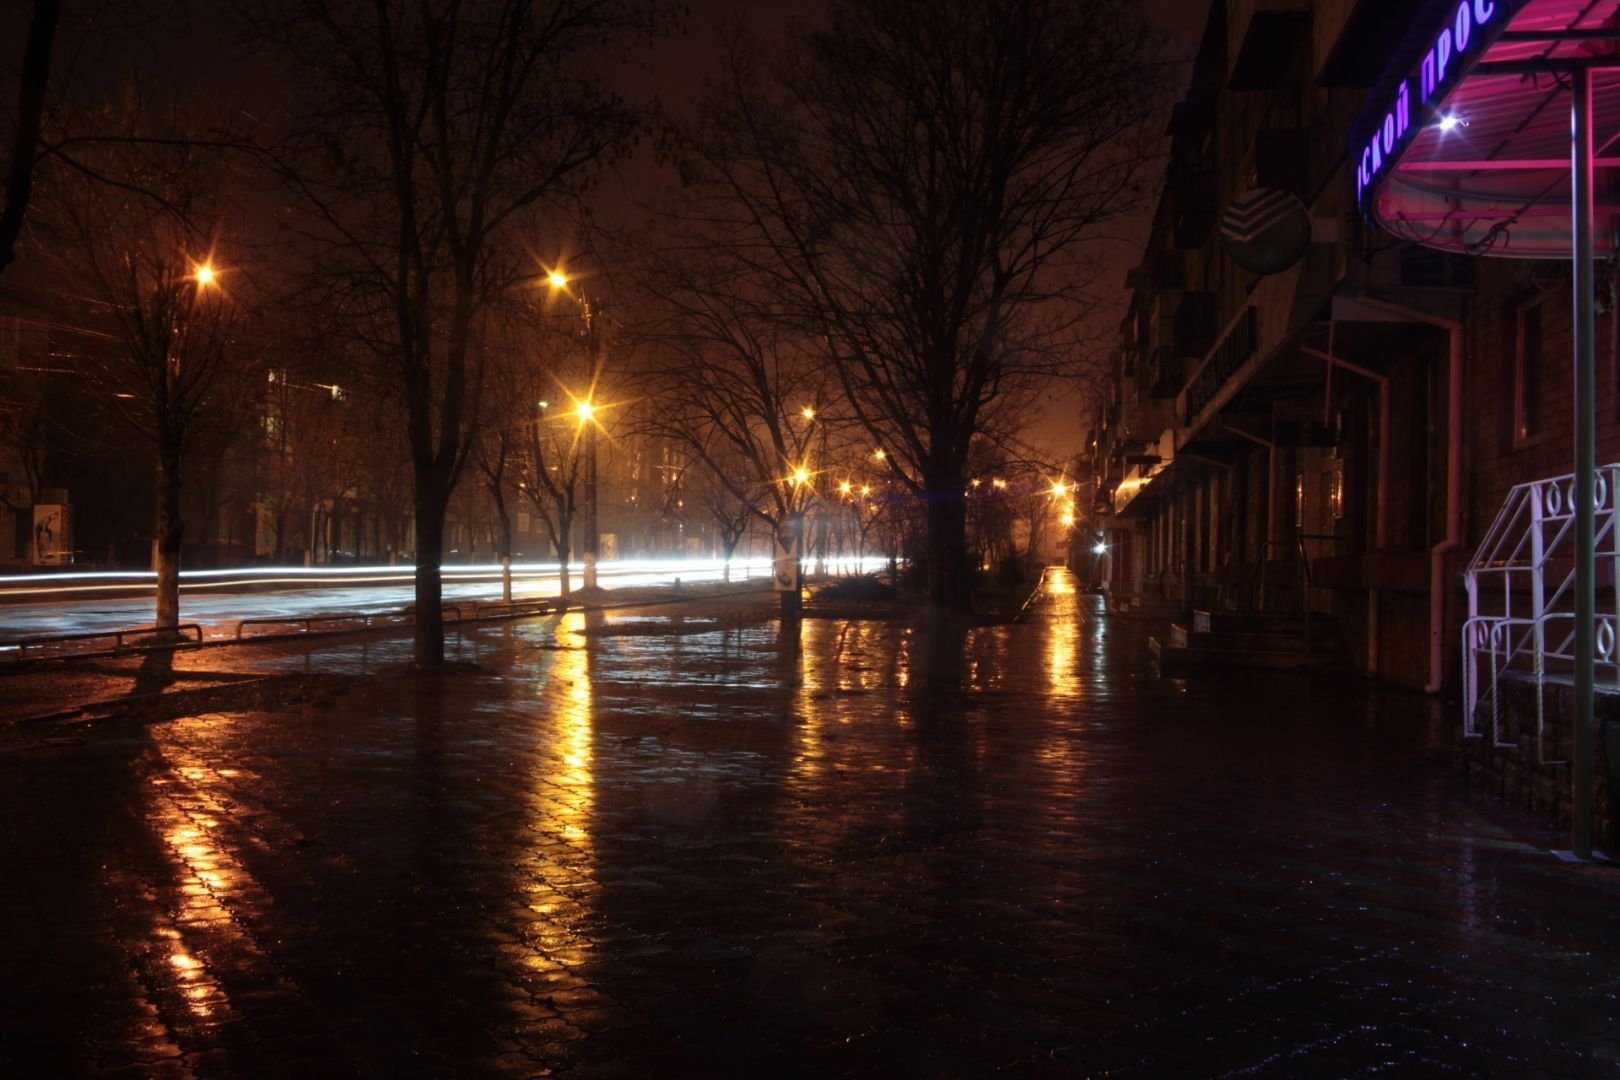 Вечером после 12. "Дождливый вечер". Ночной дождь. Дождь на улице. Поздний вечер в городе.